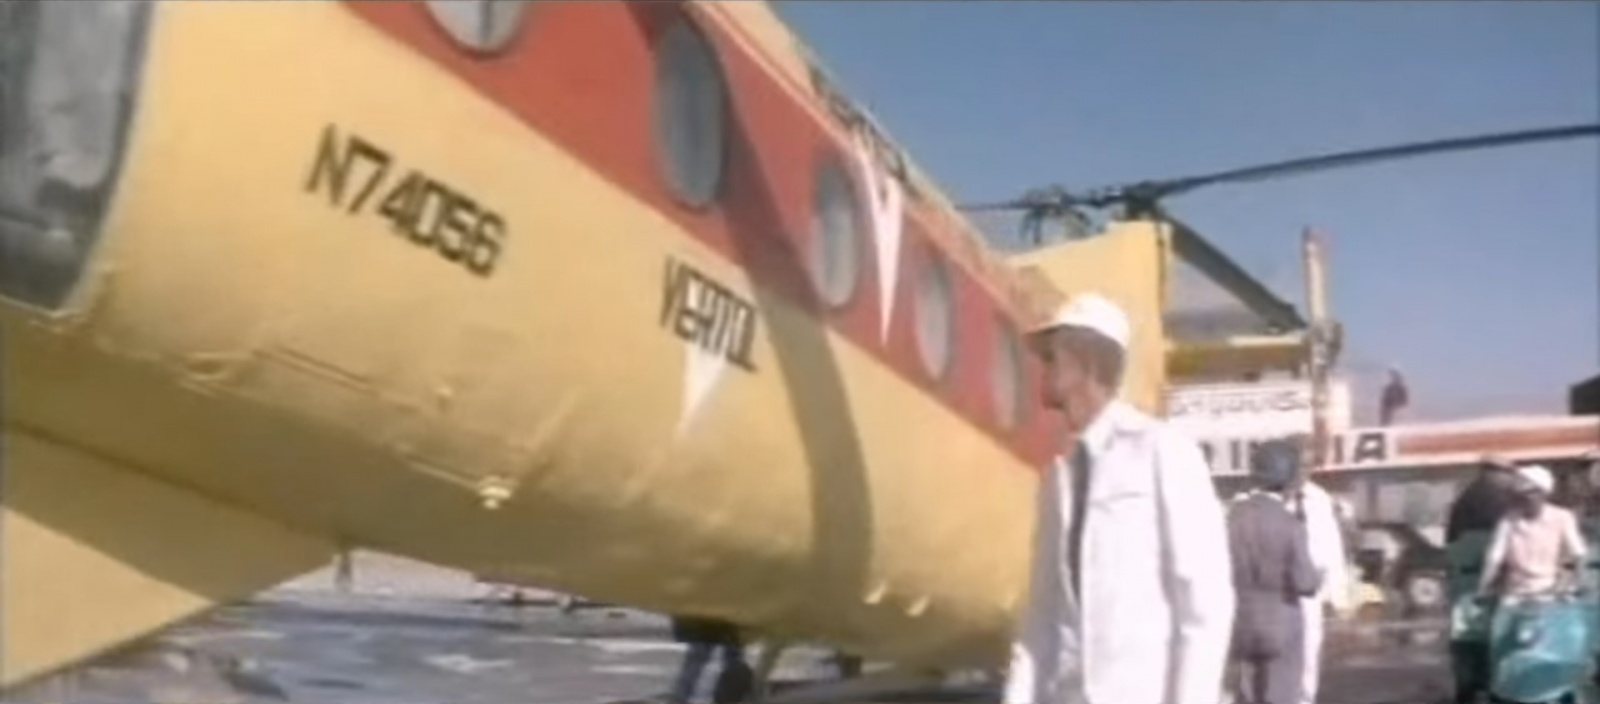 «Монинский» Vertol-44Cснялся в фильме «Если хочешь быть счастливым» («Мосфильм», 1974) в роли экспоната авиавыставки в Индии. Потом он ещё несколько лет стоял в музее, окрашенный в странную жёлто-красную ливрею с британскими флагами на килях   